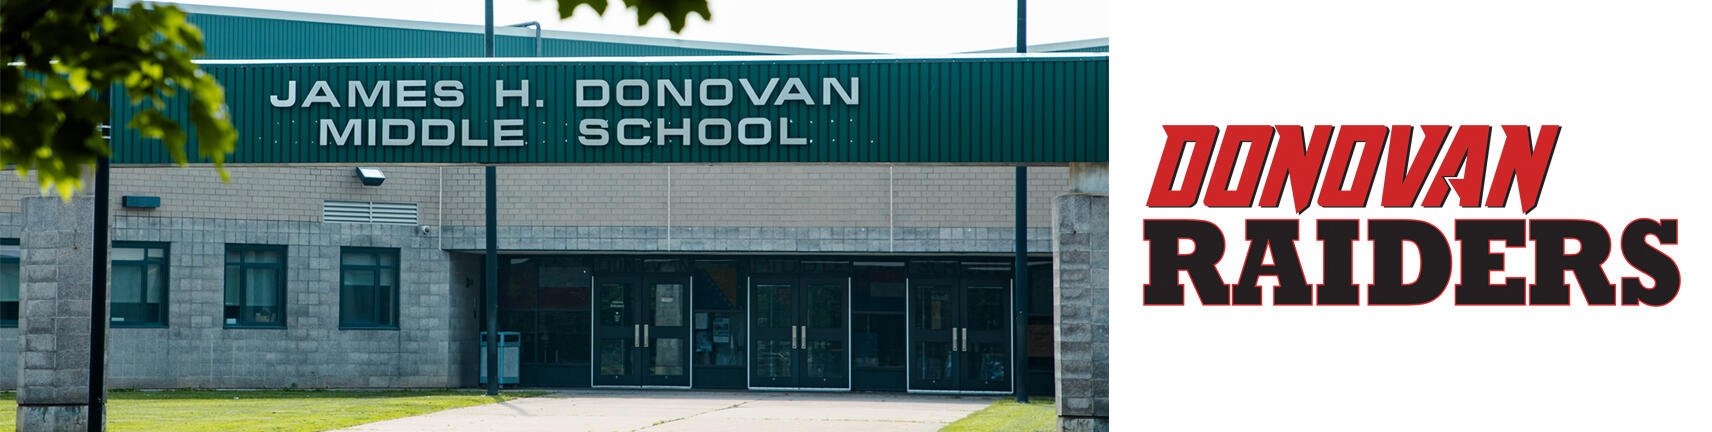 ဒိုနိုဗန်ကျောင်းနှင့် Donovan Raiders Logo တို့တည်ဆောက်ပုံ